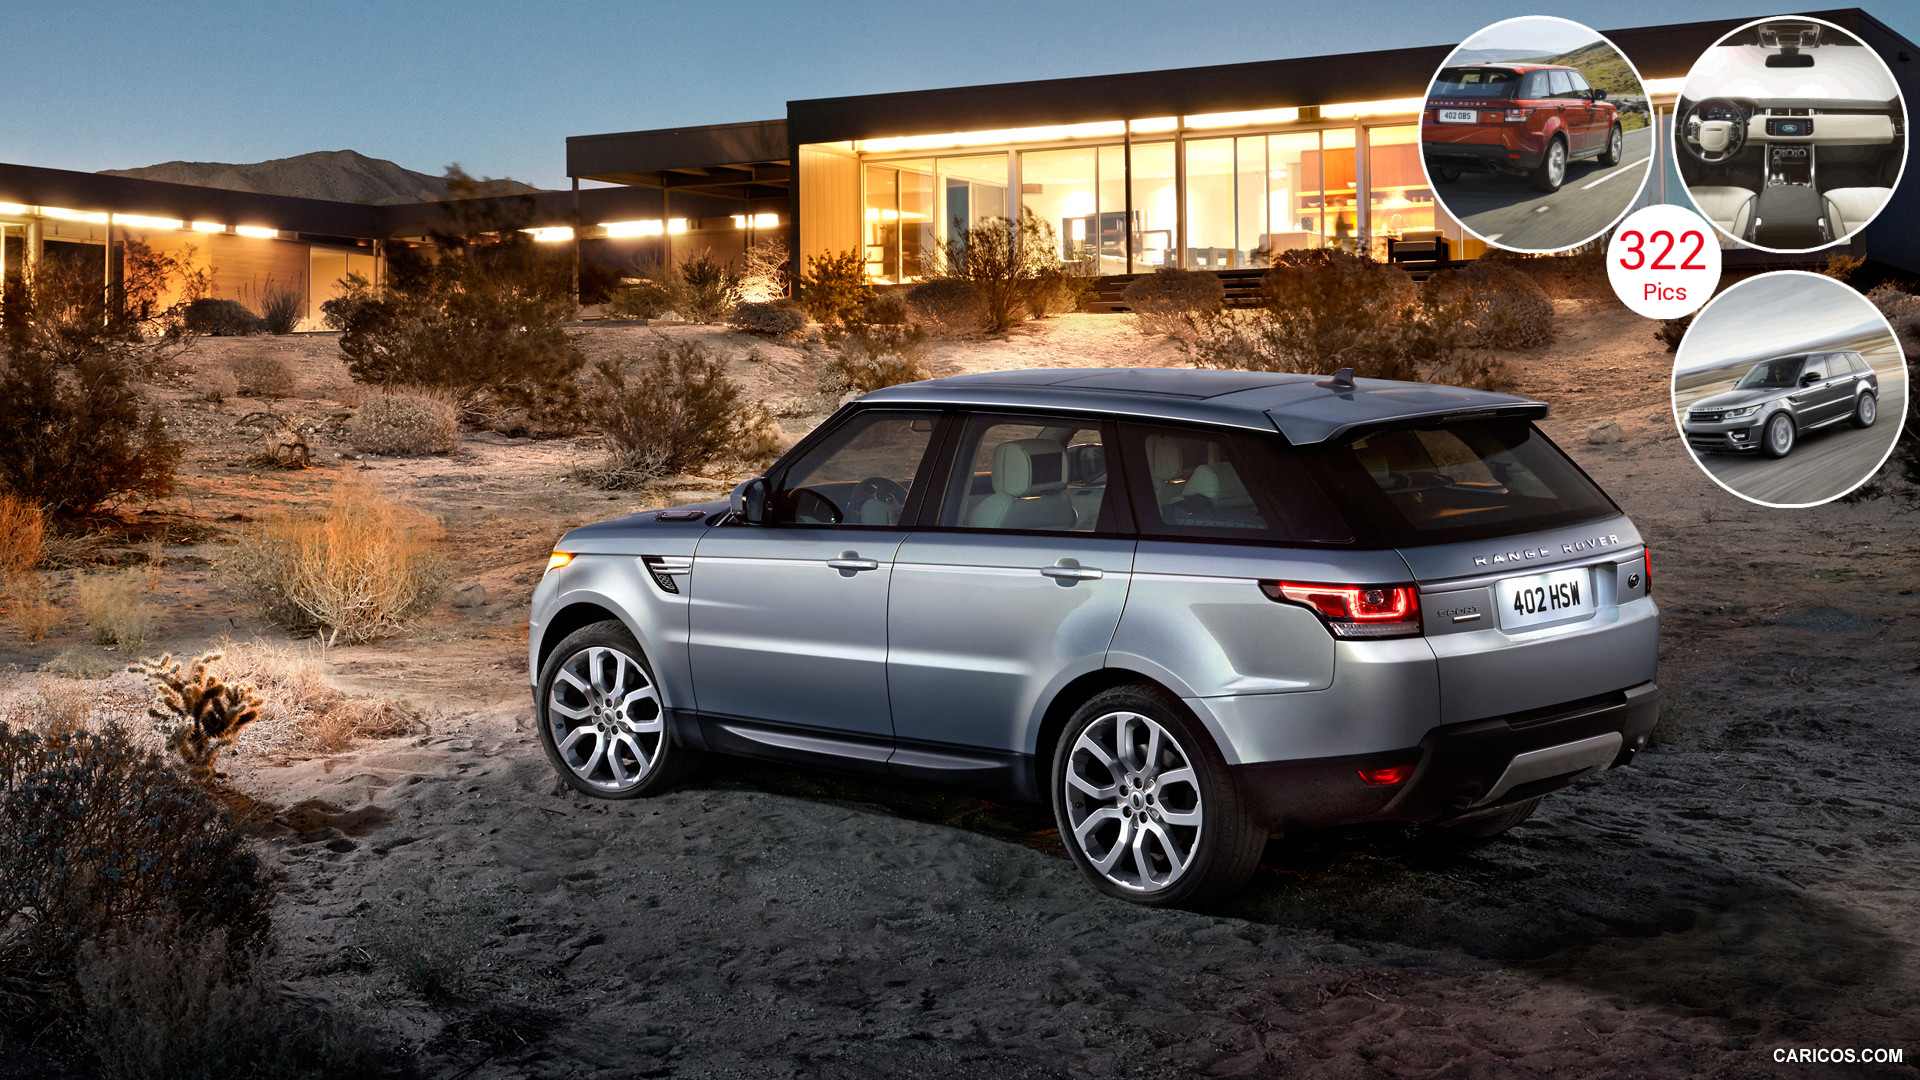 2014 Range Rover Sport Caricos.com